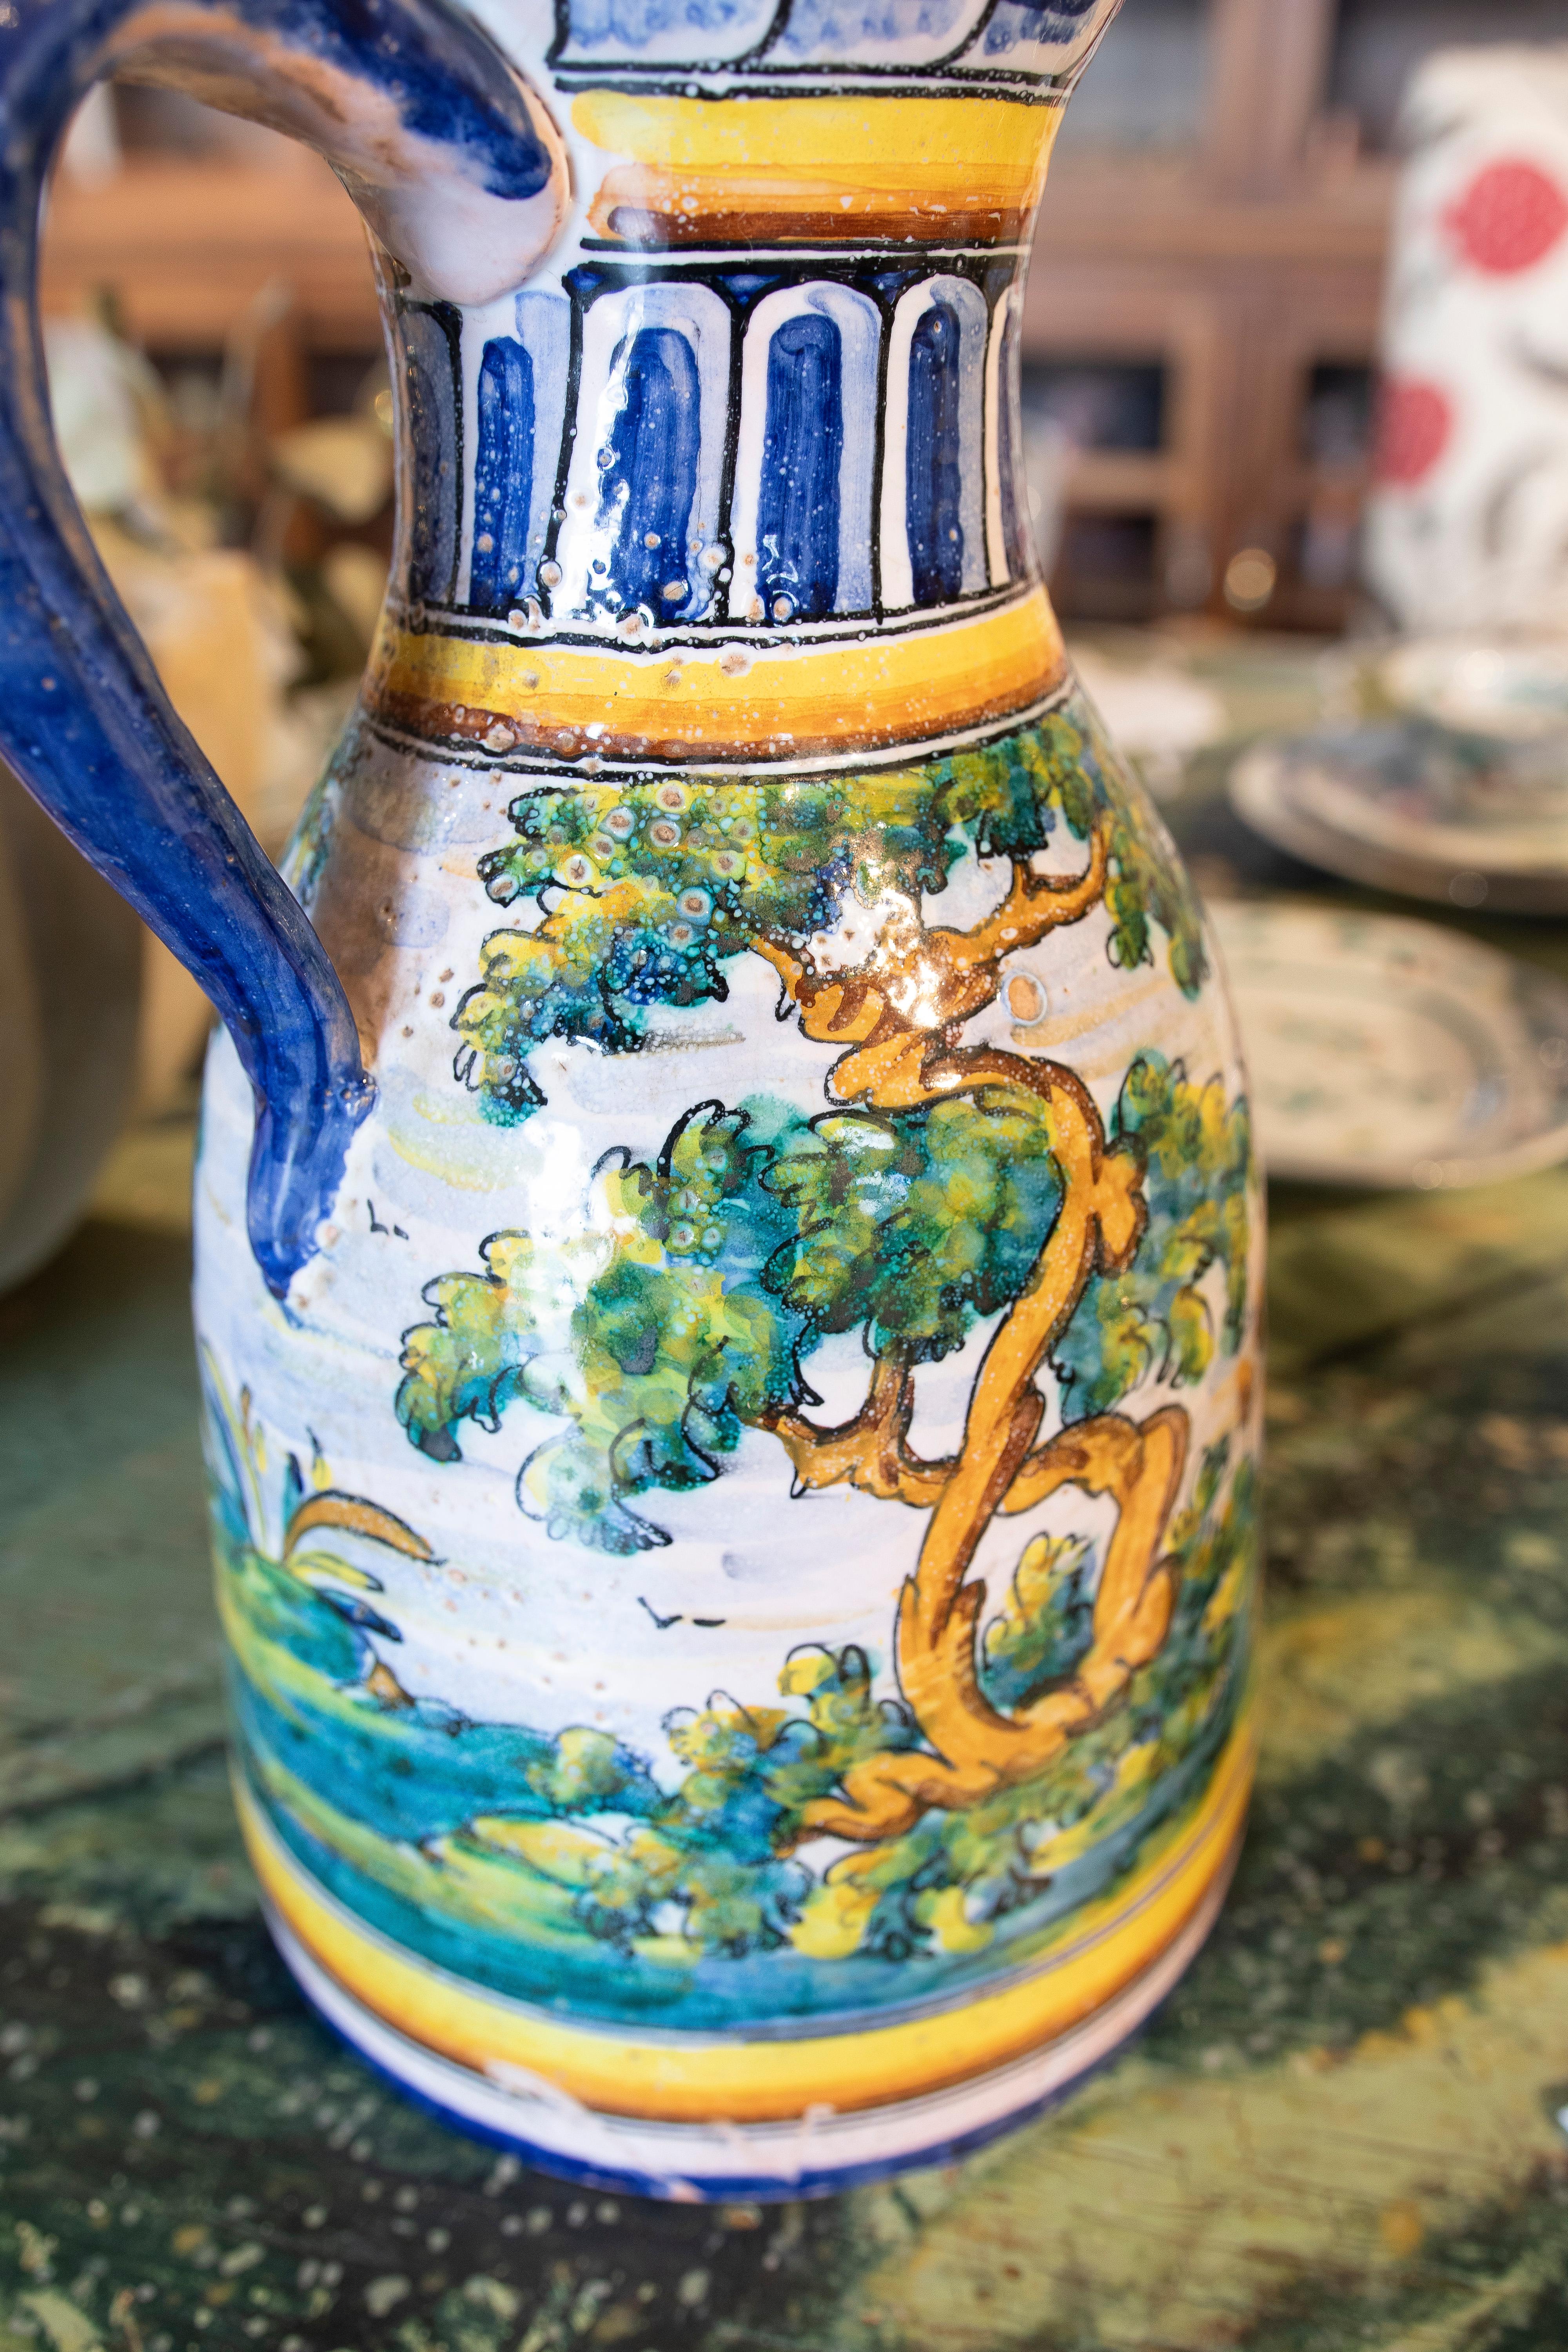 Cruche espagnole en céramique Talavera peinte à la main représentant un paysage avec des arbres 10